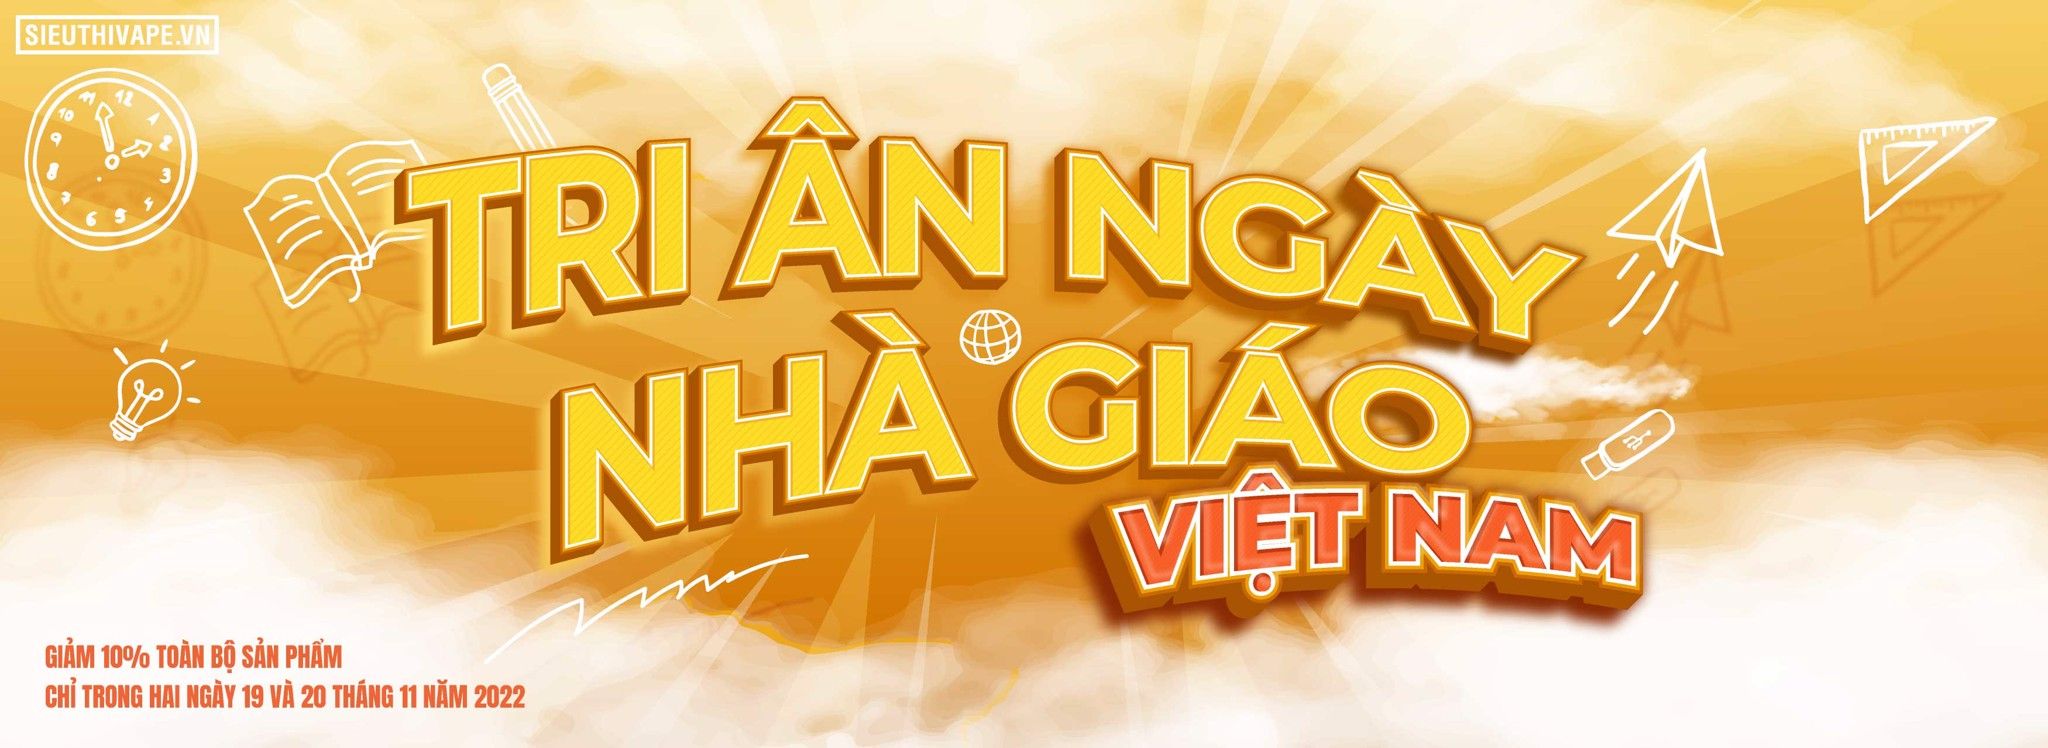 Chào mừng ngày Nhà giáo Việt Nam, hãy cùng chúng tôi tham gia chương trình giảm giá đặc biệt để tri ân các nhà giáo. Những sản phẩm tuyệt vời từ trang web của chúng tôi sẽ là món quà ý nghĩa dành cho những người thầy cô của bạn. Khuyến mãi chỉ diễn ra trong một thời gian ngắn, hãy nhanh tay đặt hàng ngay hôm nay!